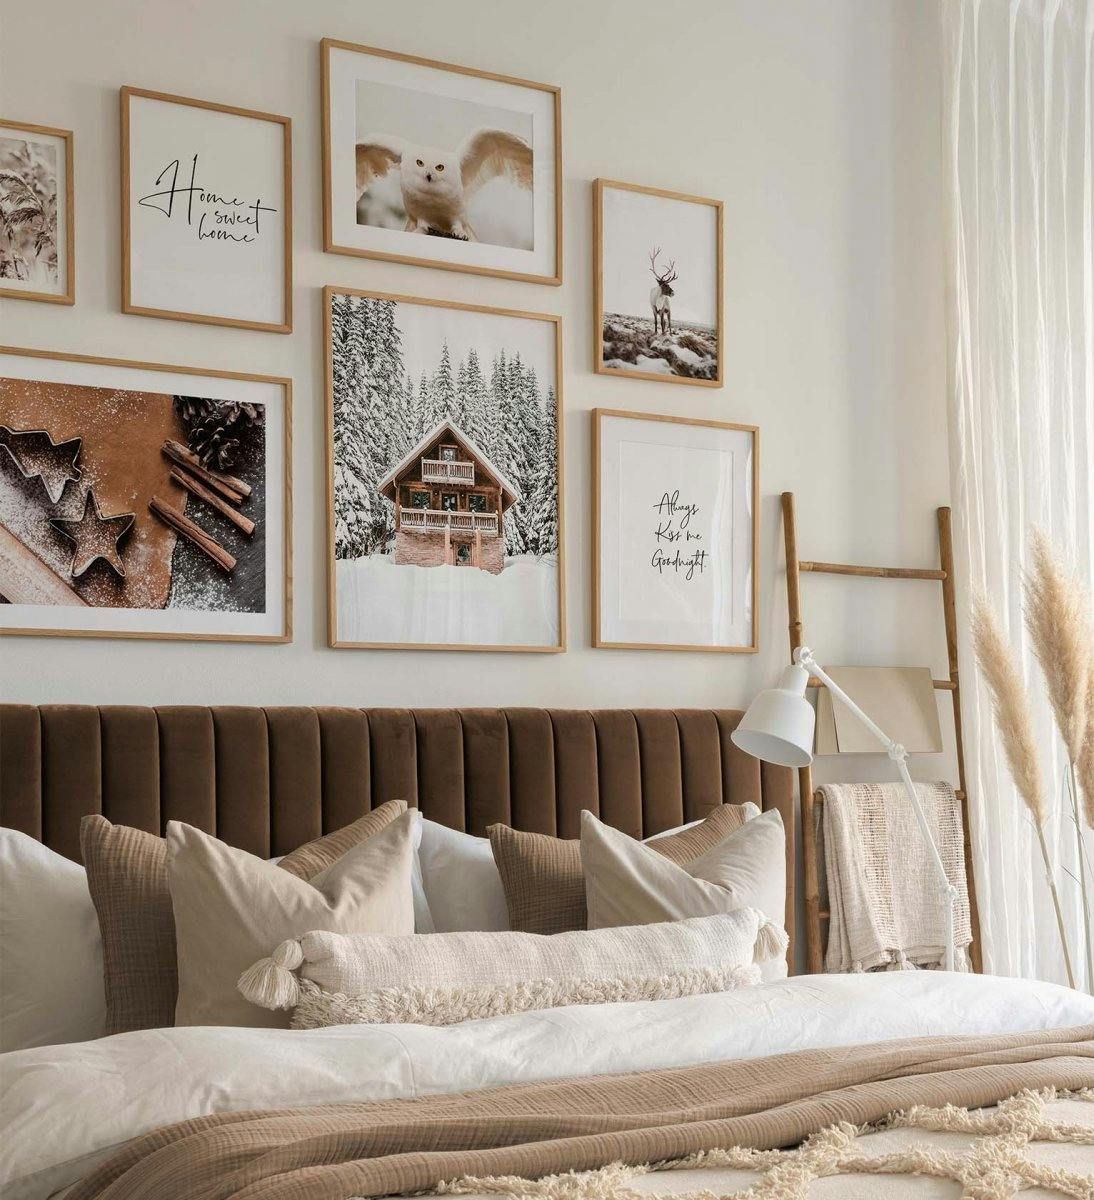 침실용 오크 프레임이 있는 갈색, 흰색, 검은색 및 흰색 따옴표의 겨울 인쇄가 있는 갤러리 벽